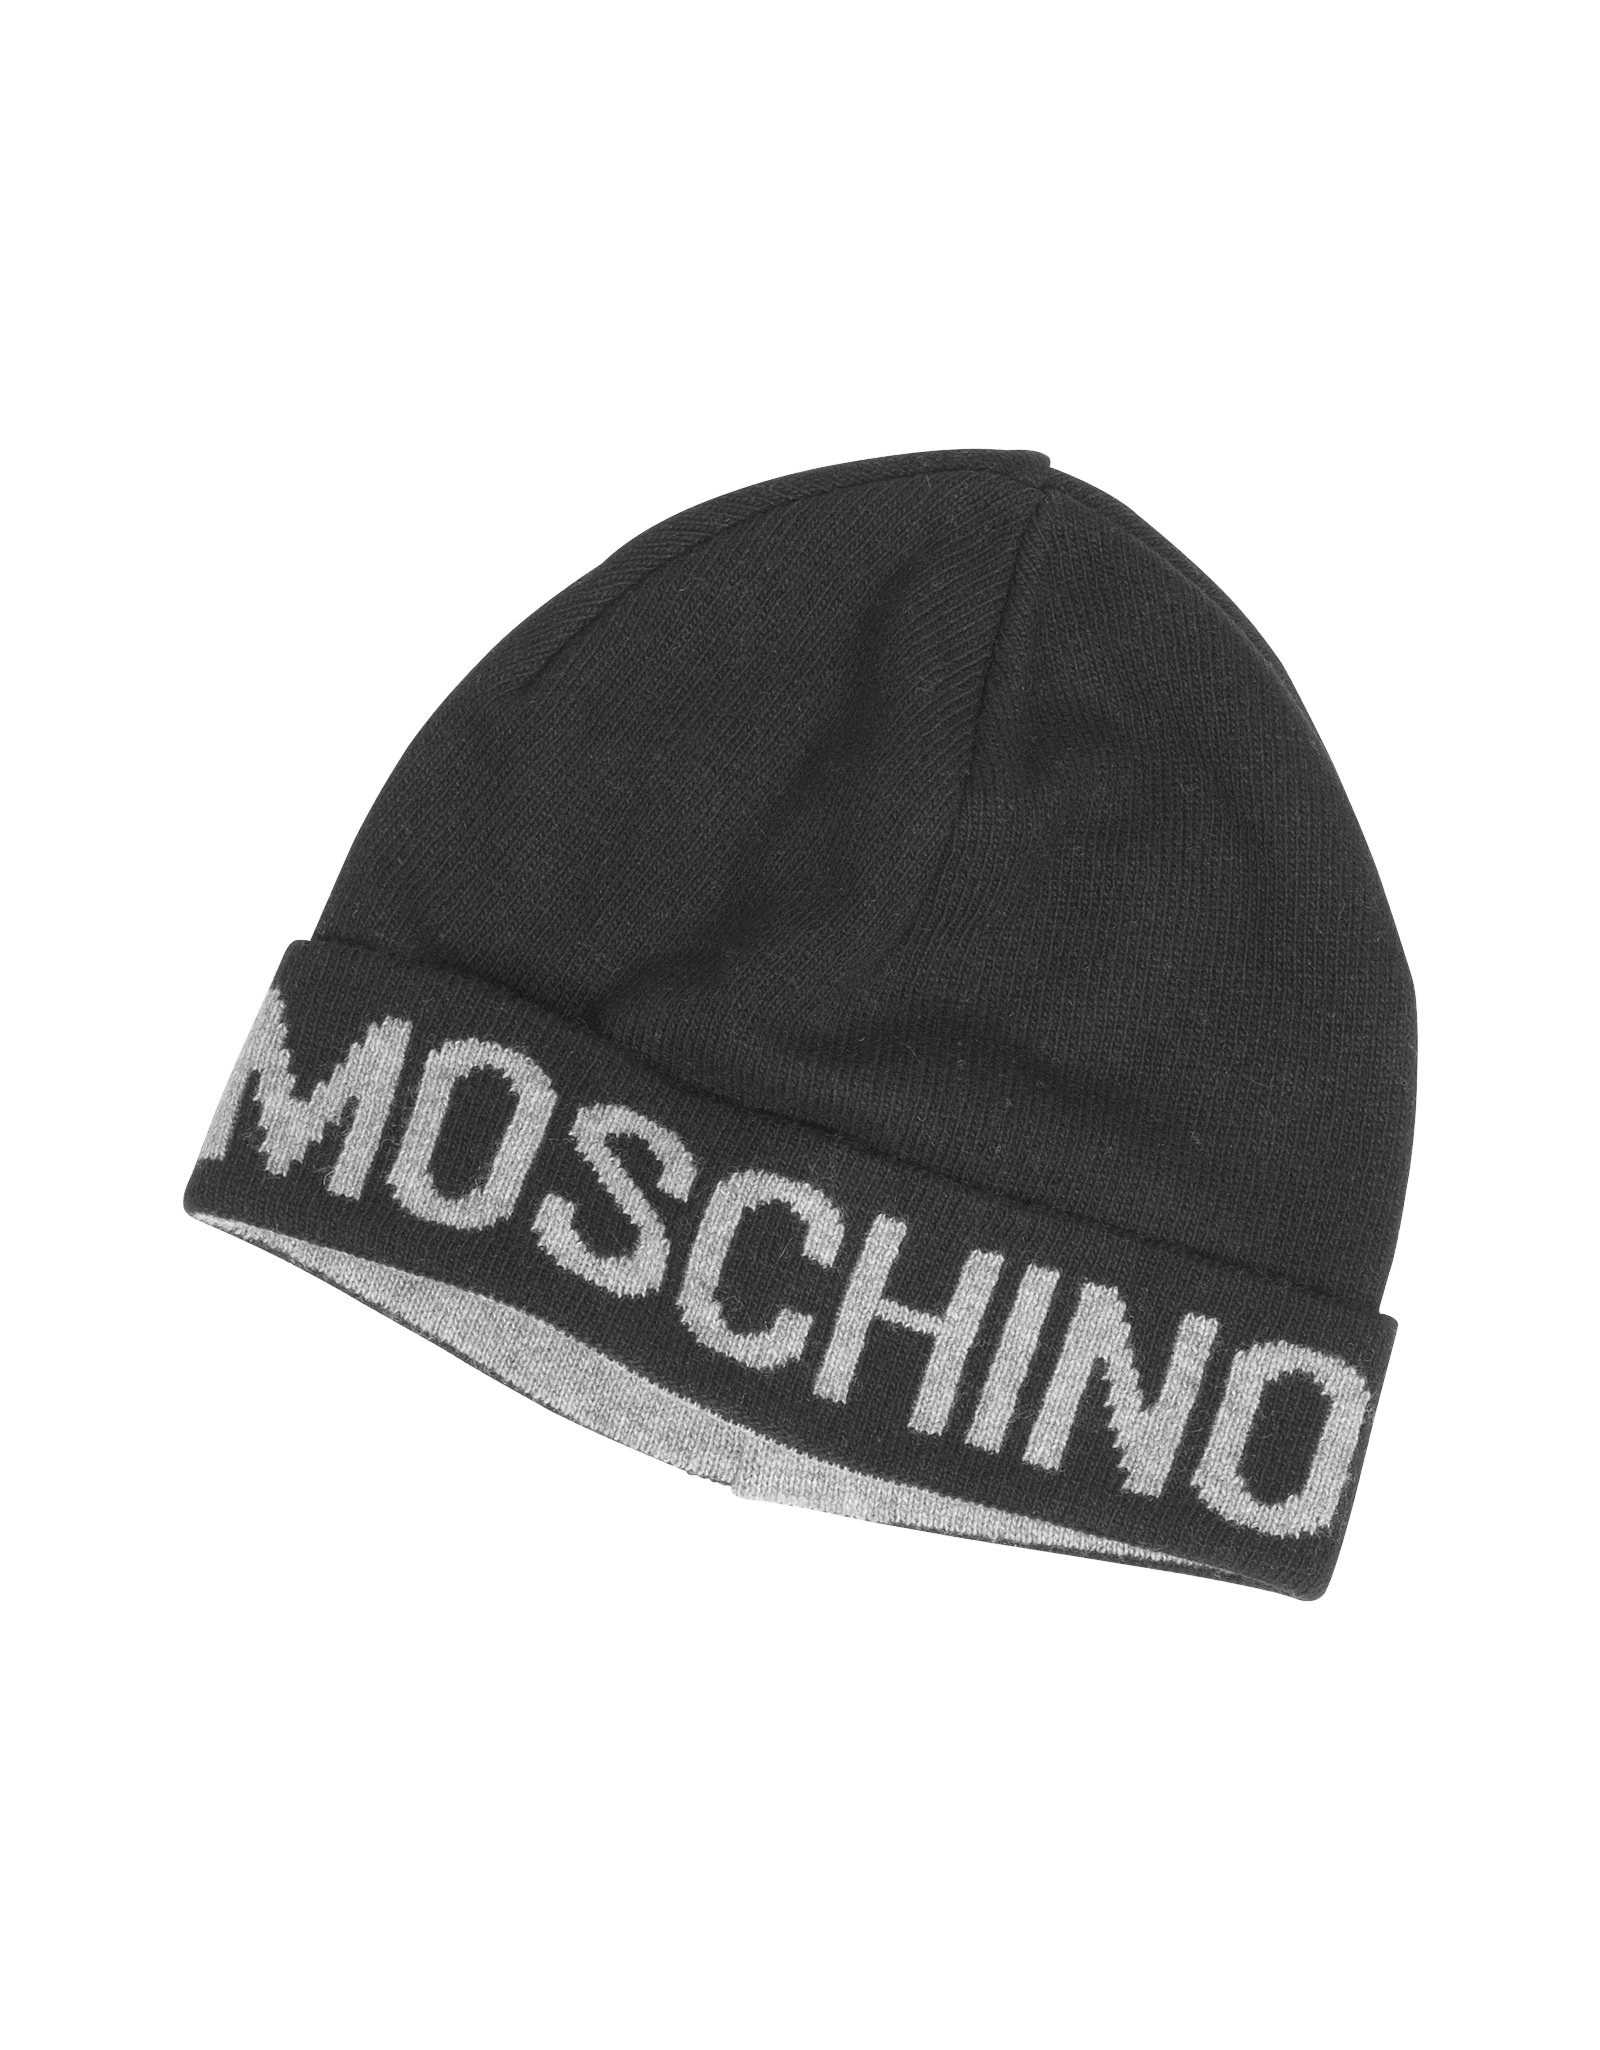 moschino hat men's